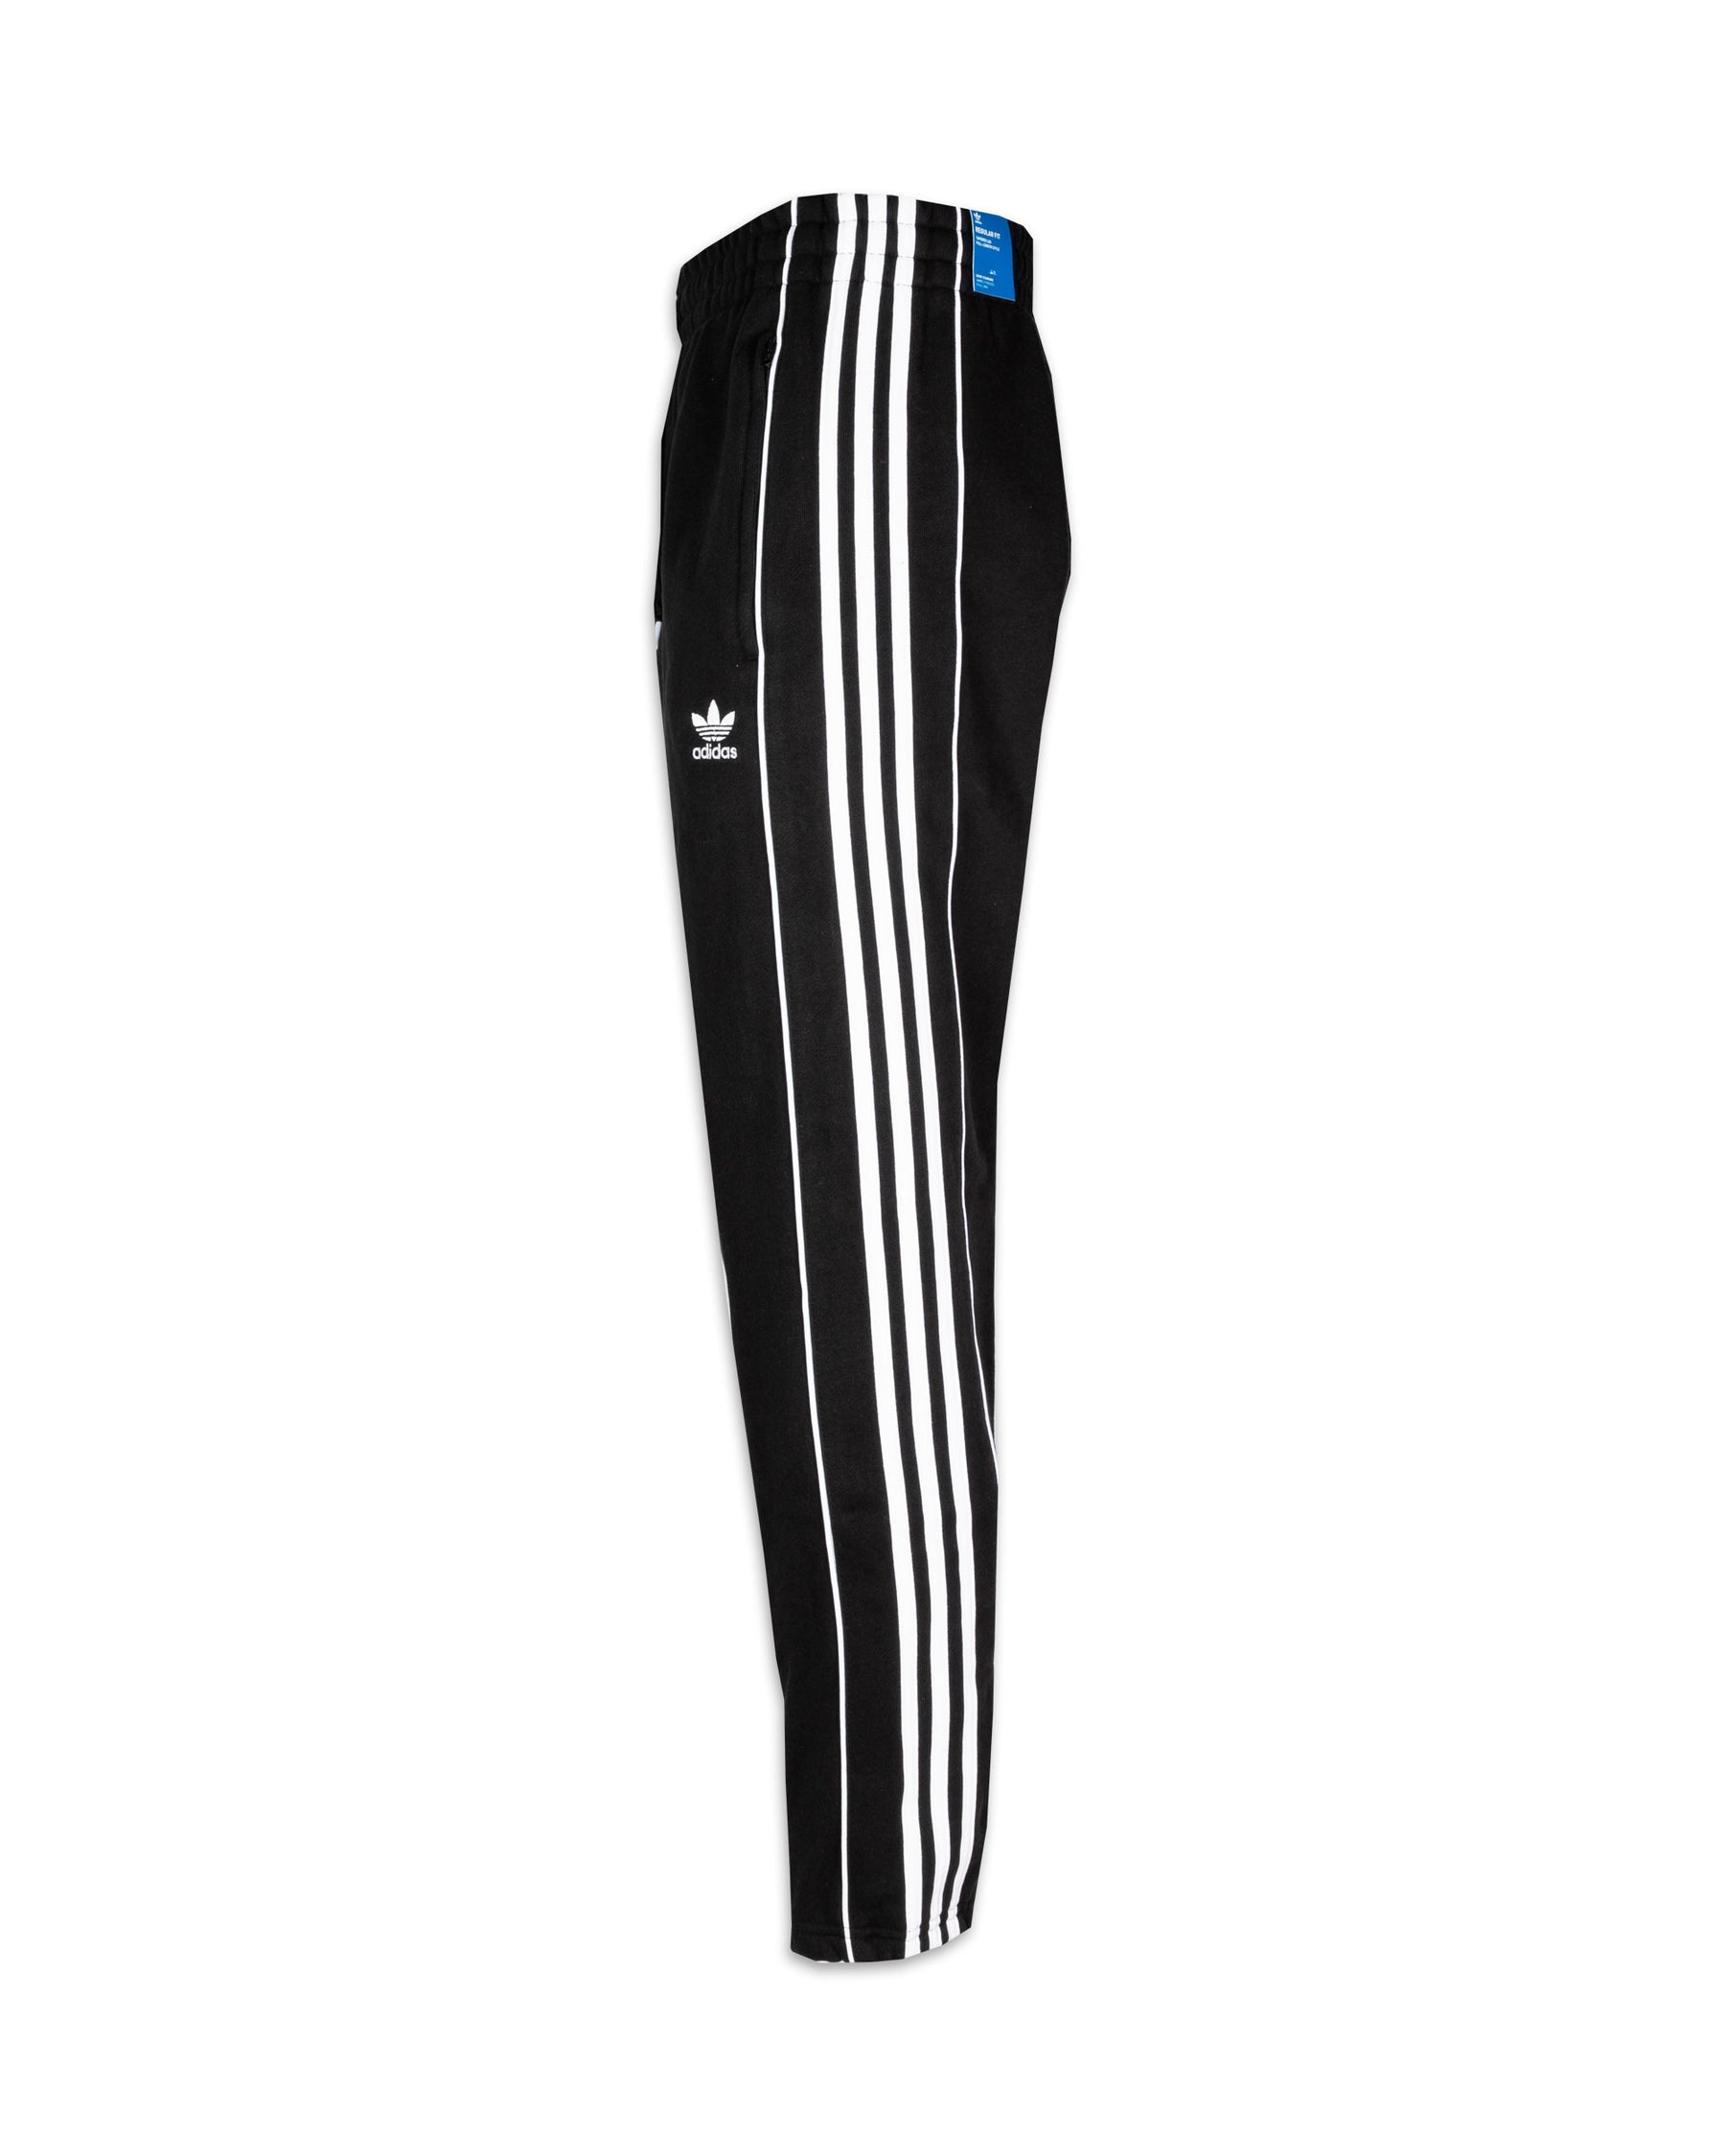 Pantalone Uomo Adidas 3 Stripe Nero